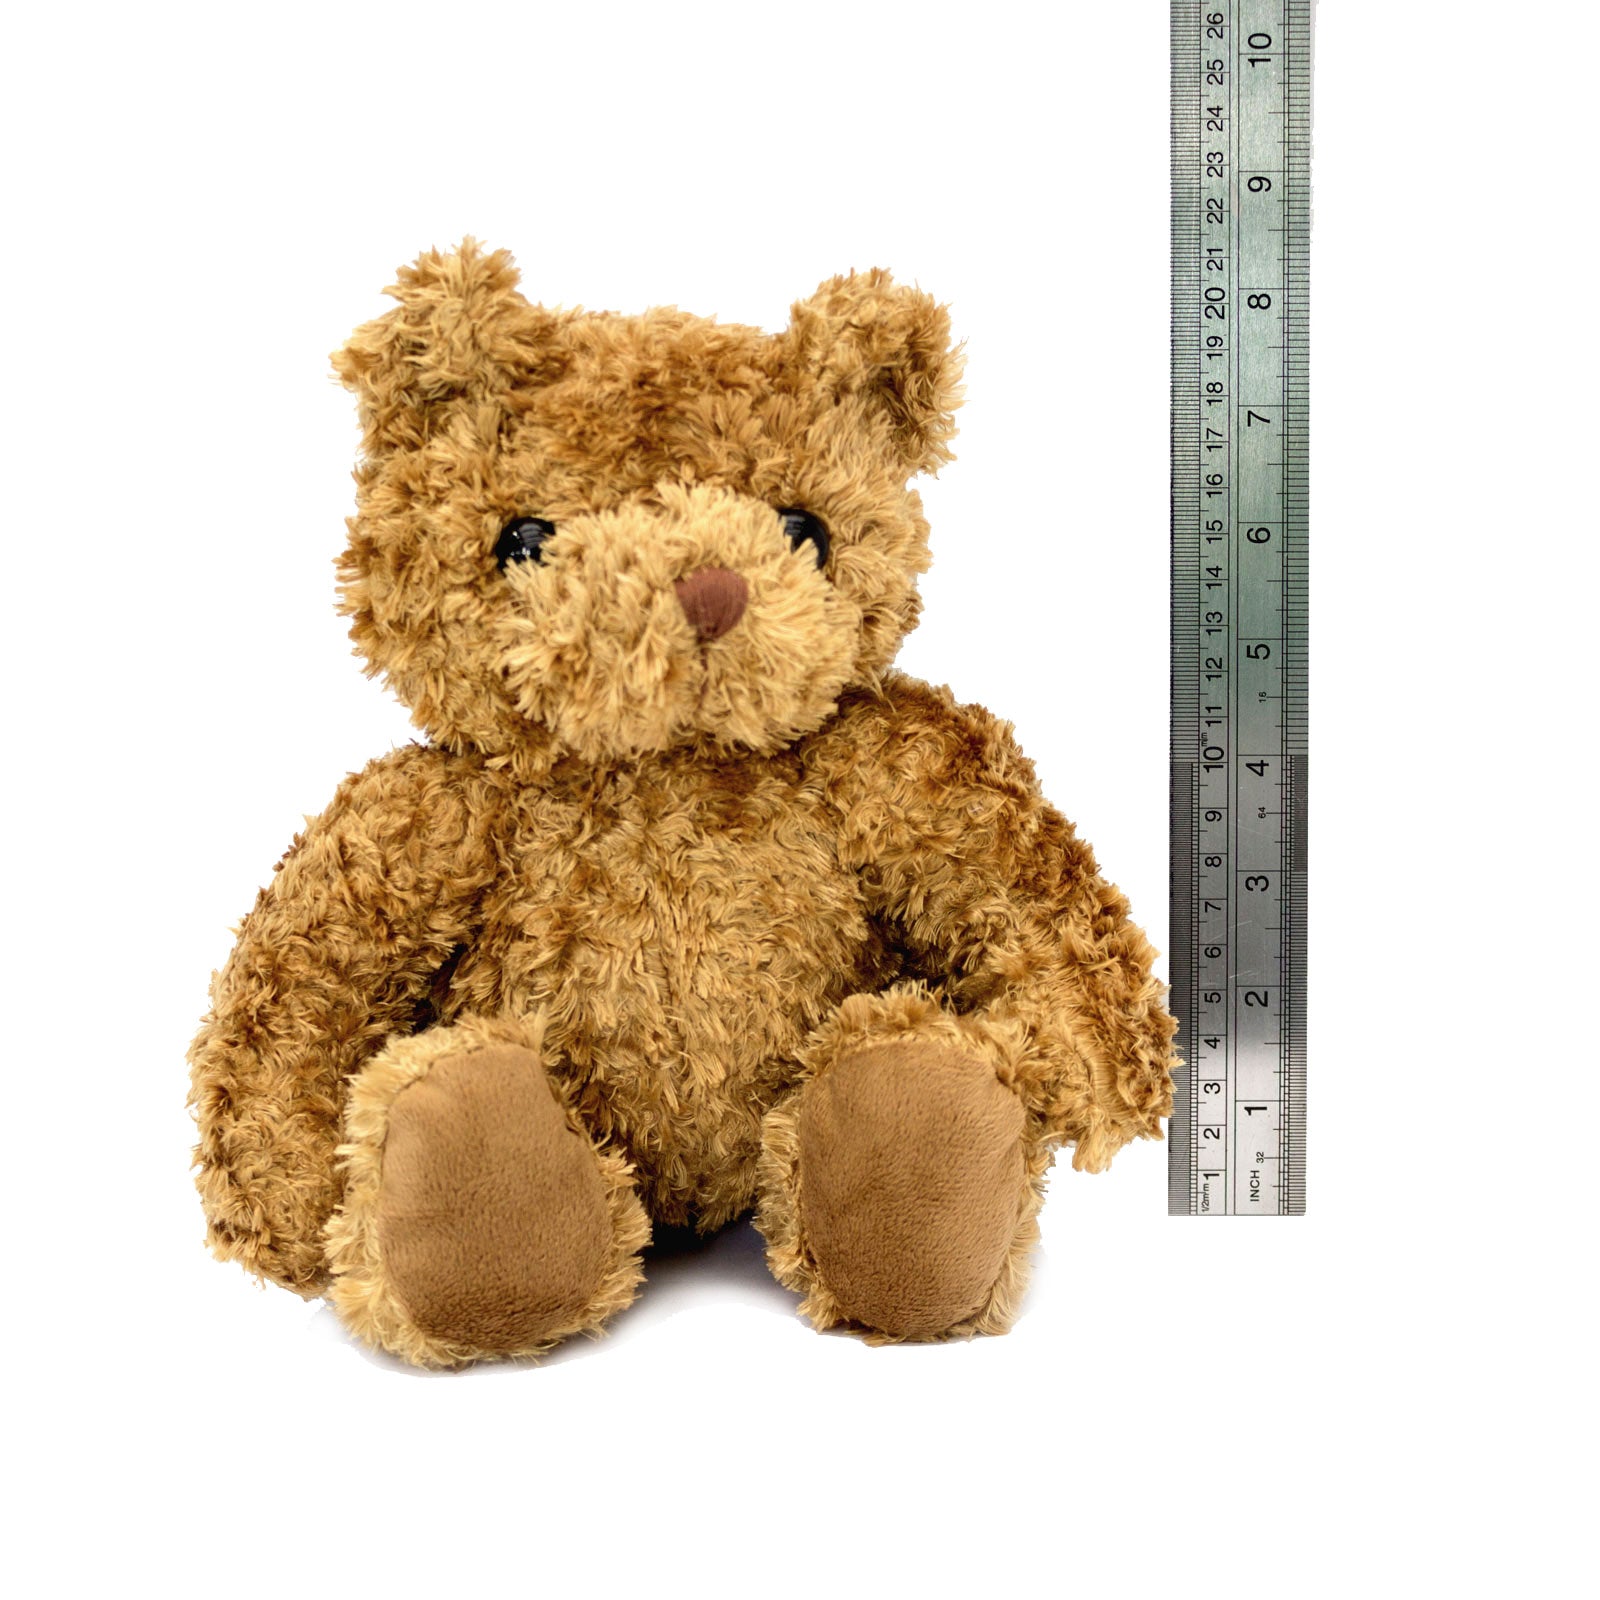 Get Well Soon Joshua - Teddy Bear